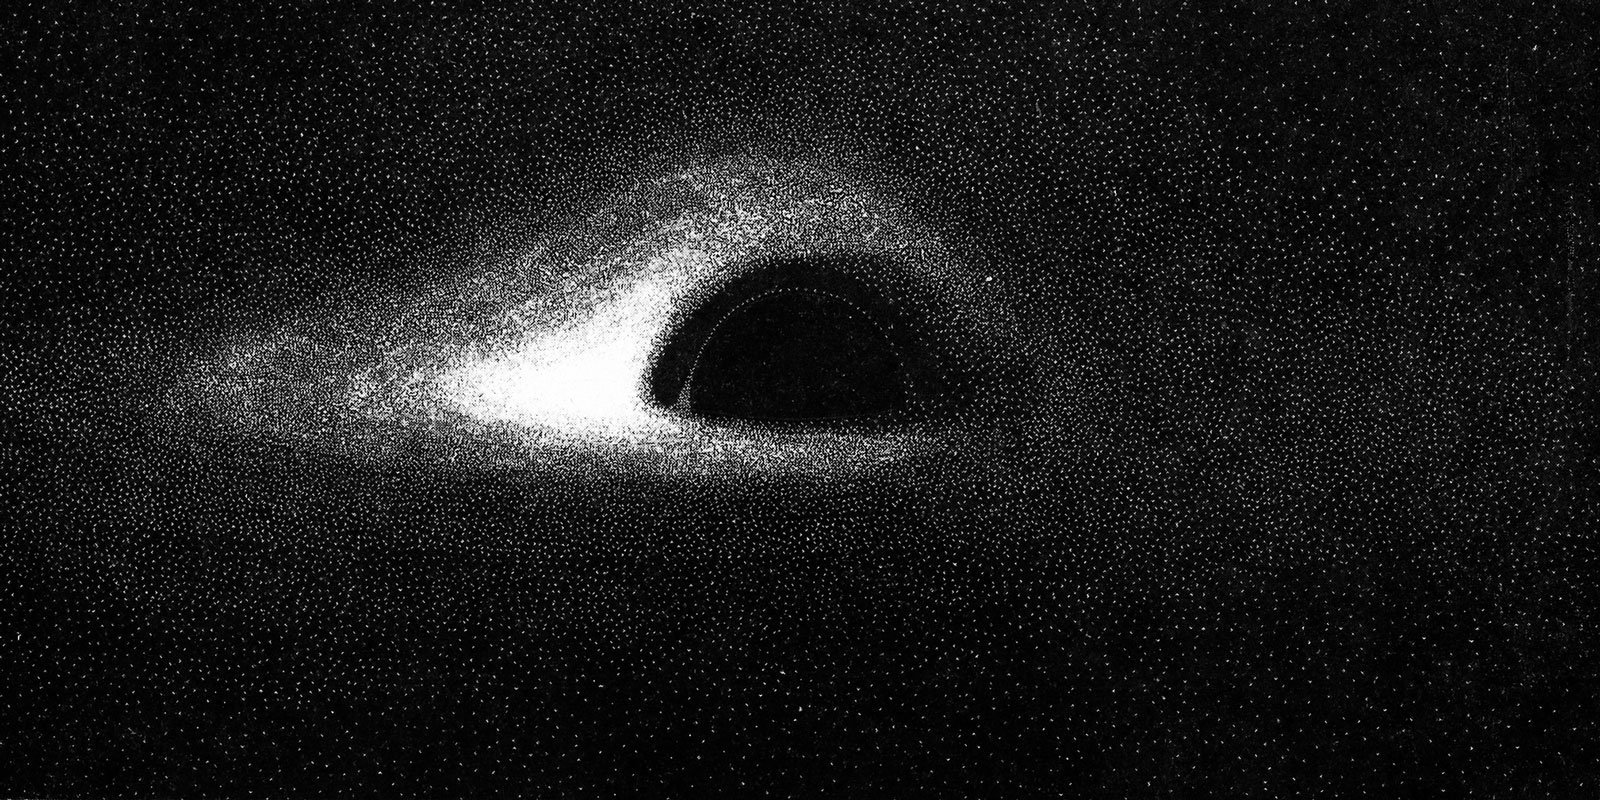 の噴火により、ブラックホールがちょっと光